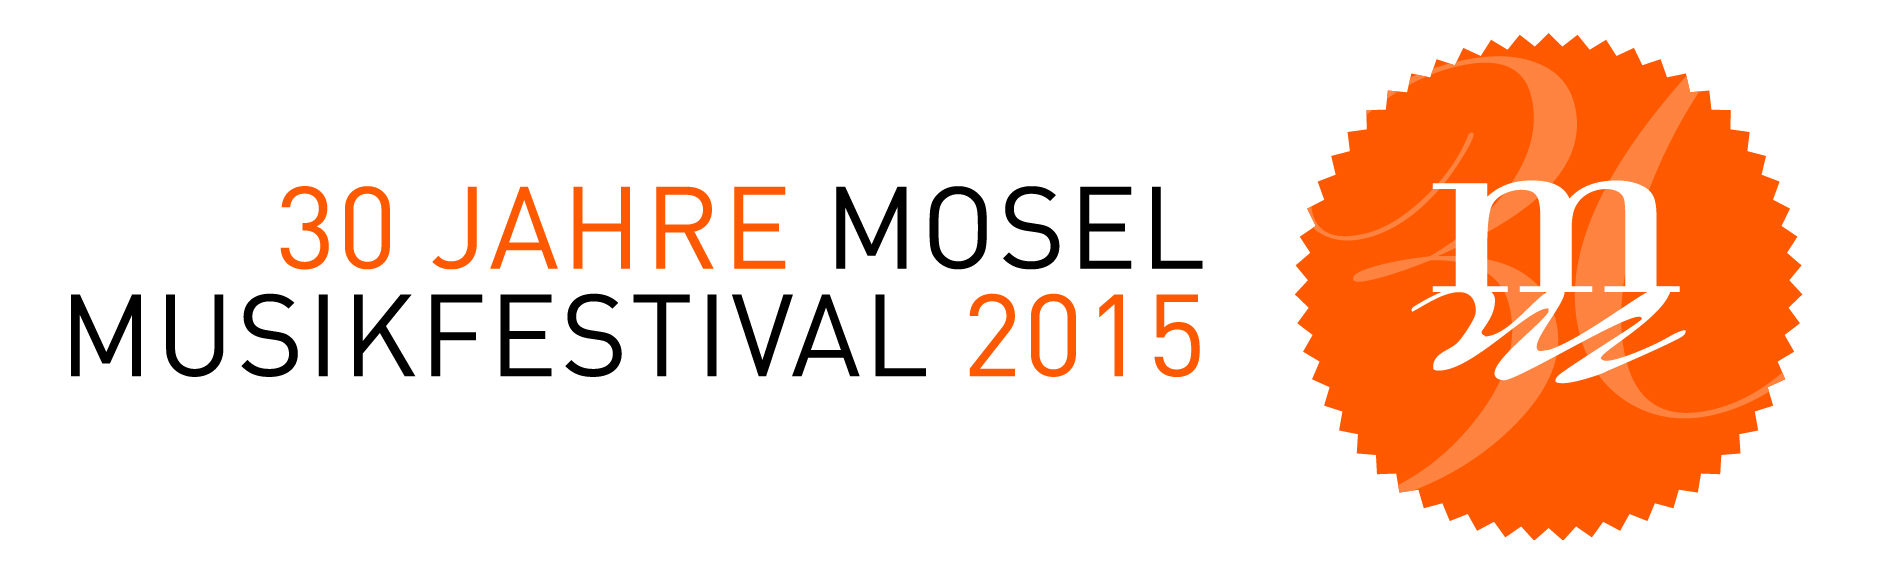 datends:bilder:mosel musikfestival:logo 2015:logo_mmf:logommf_r.jpg